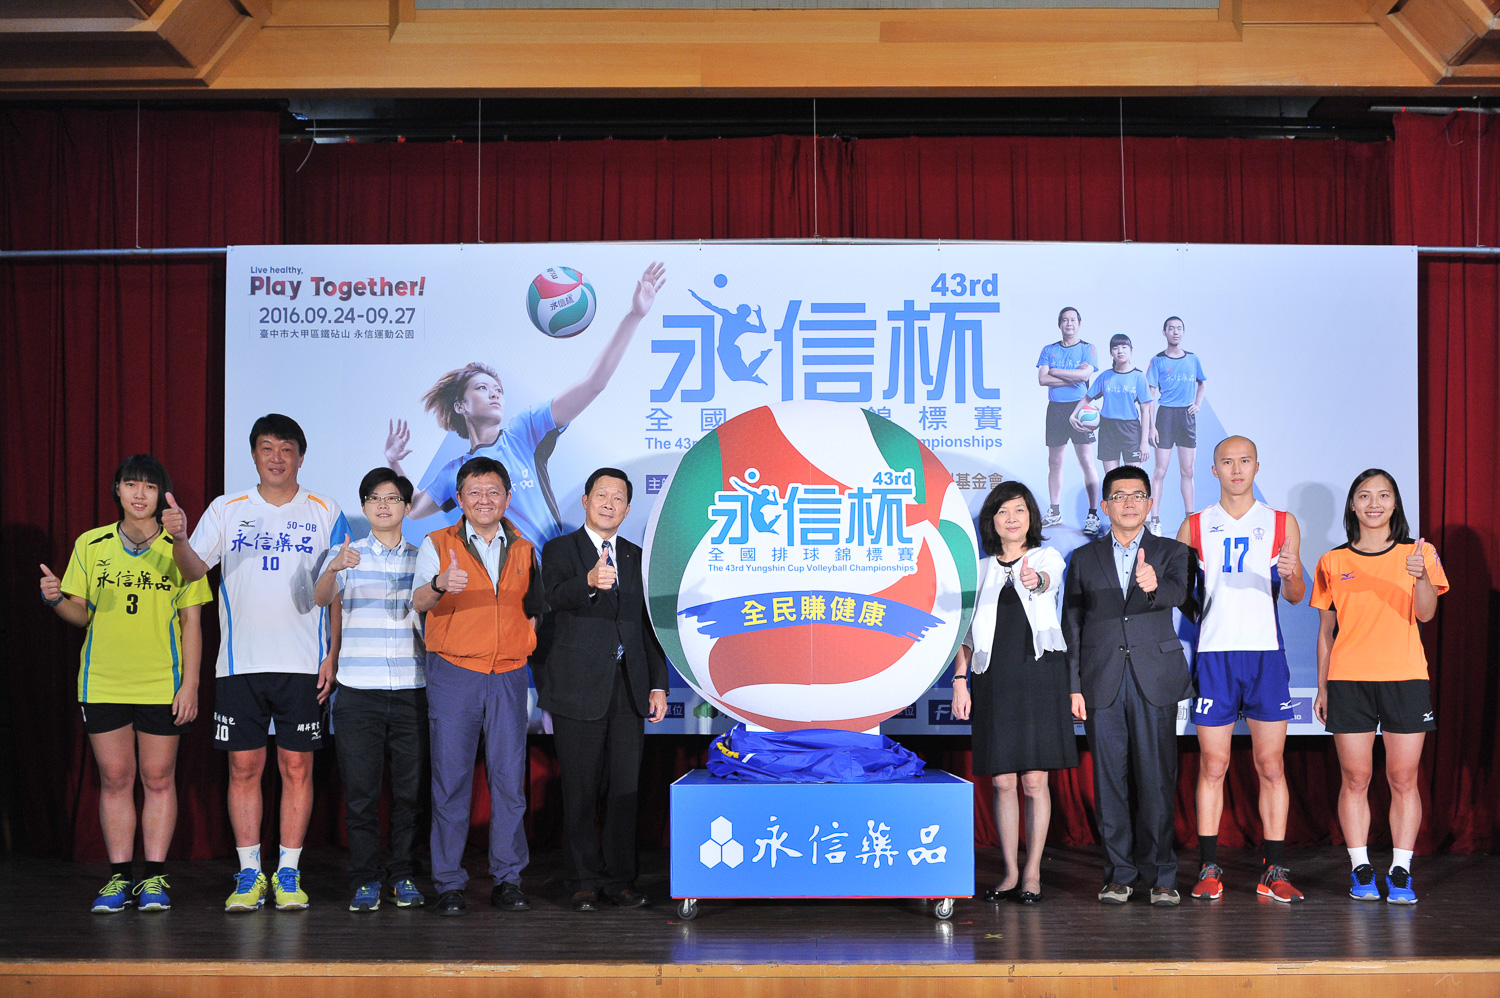 永信杯排球賽歷史悠久，是台灣排壇年度盛事。大會提供